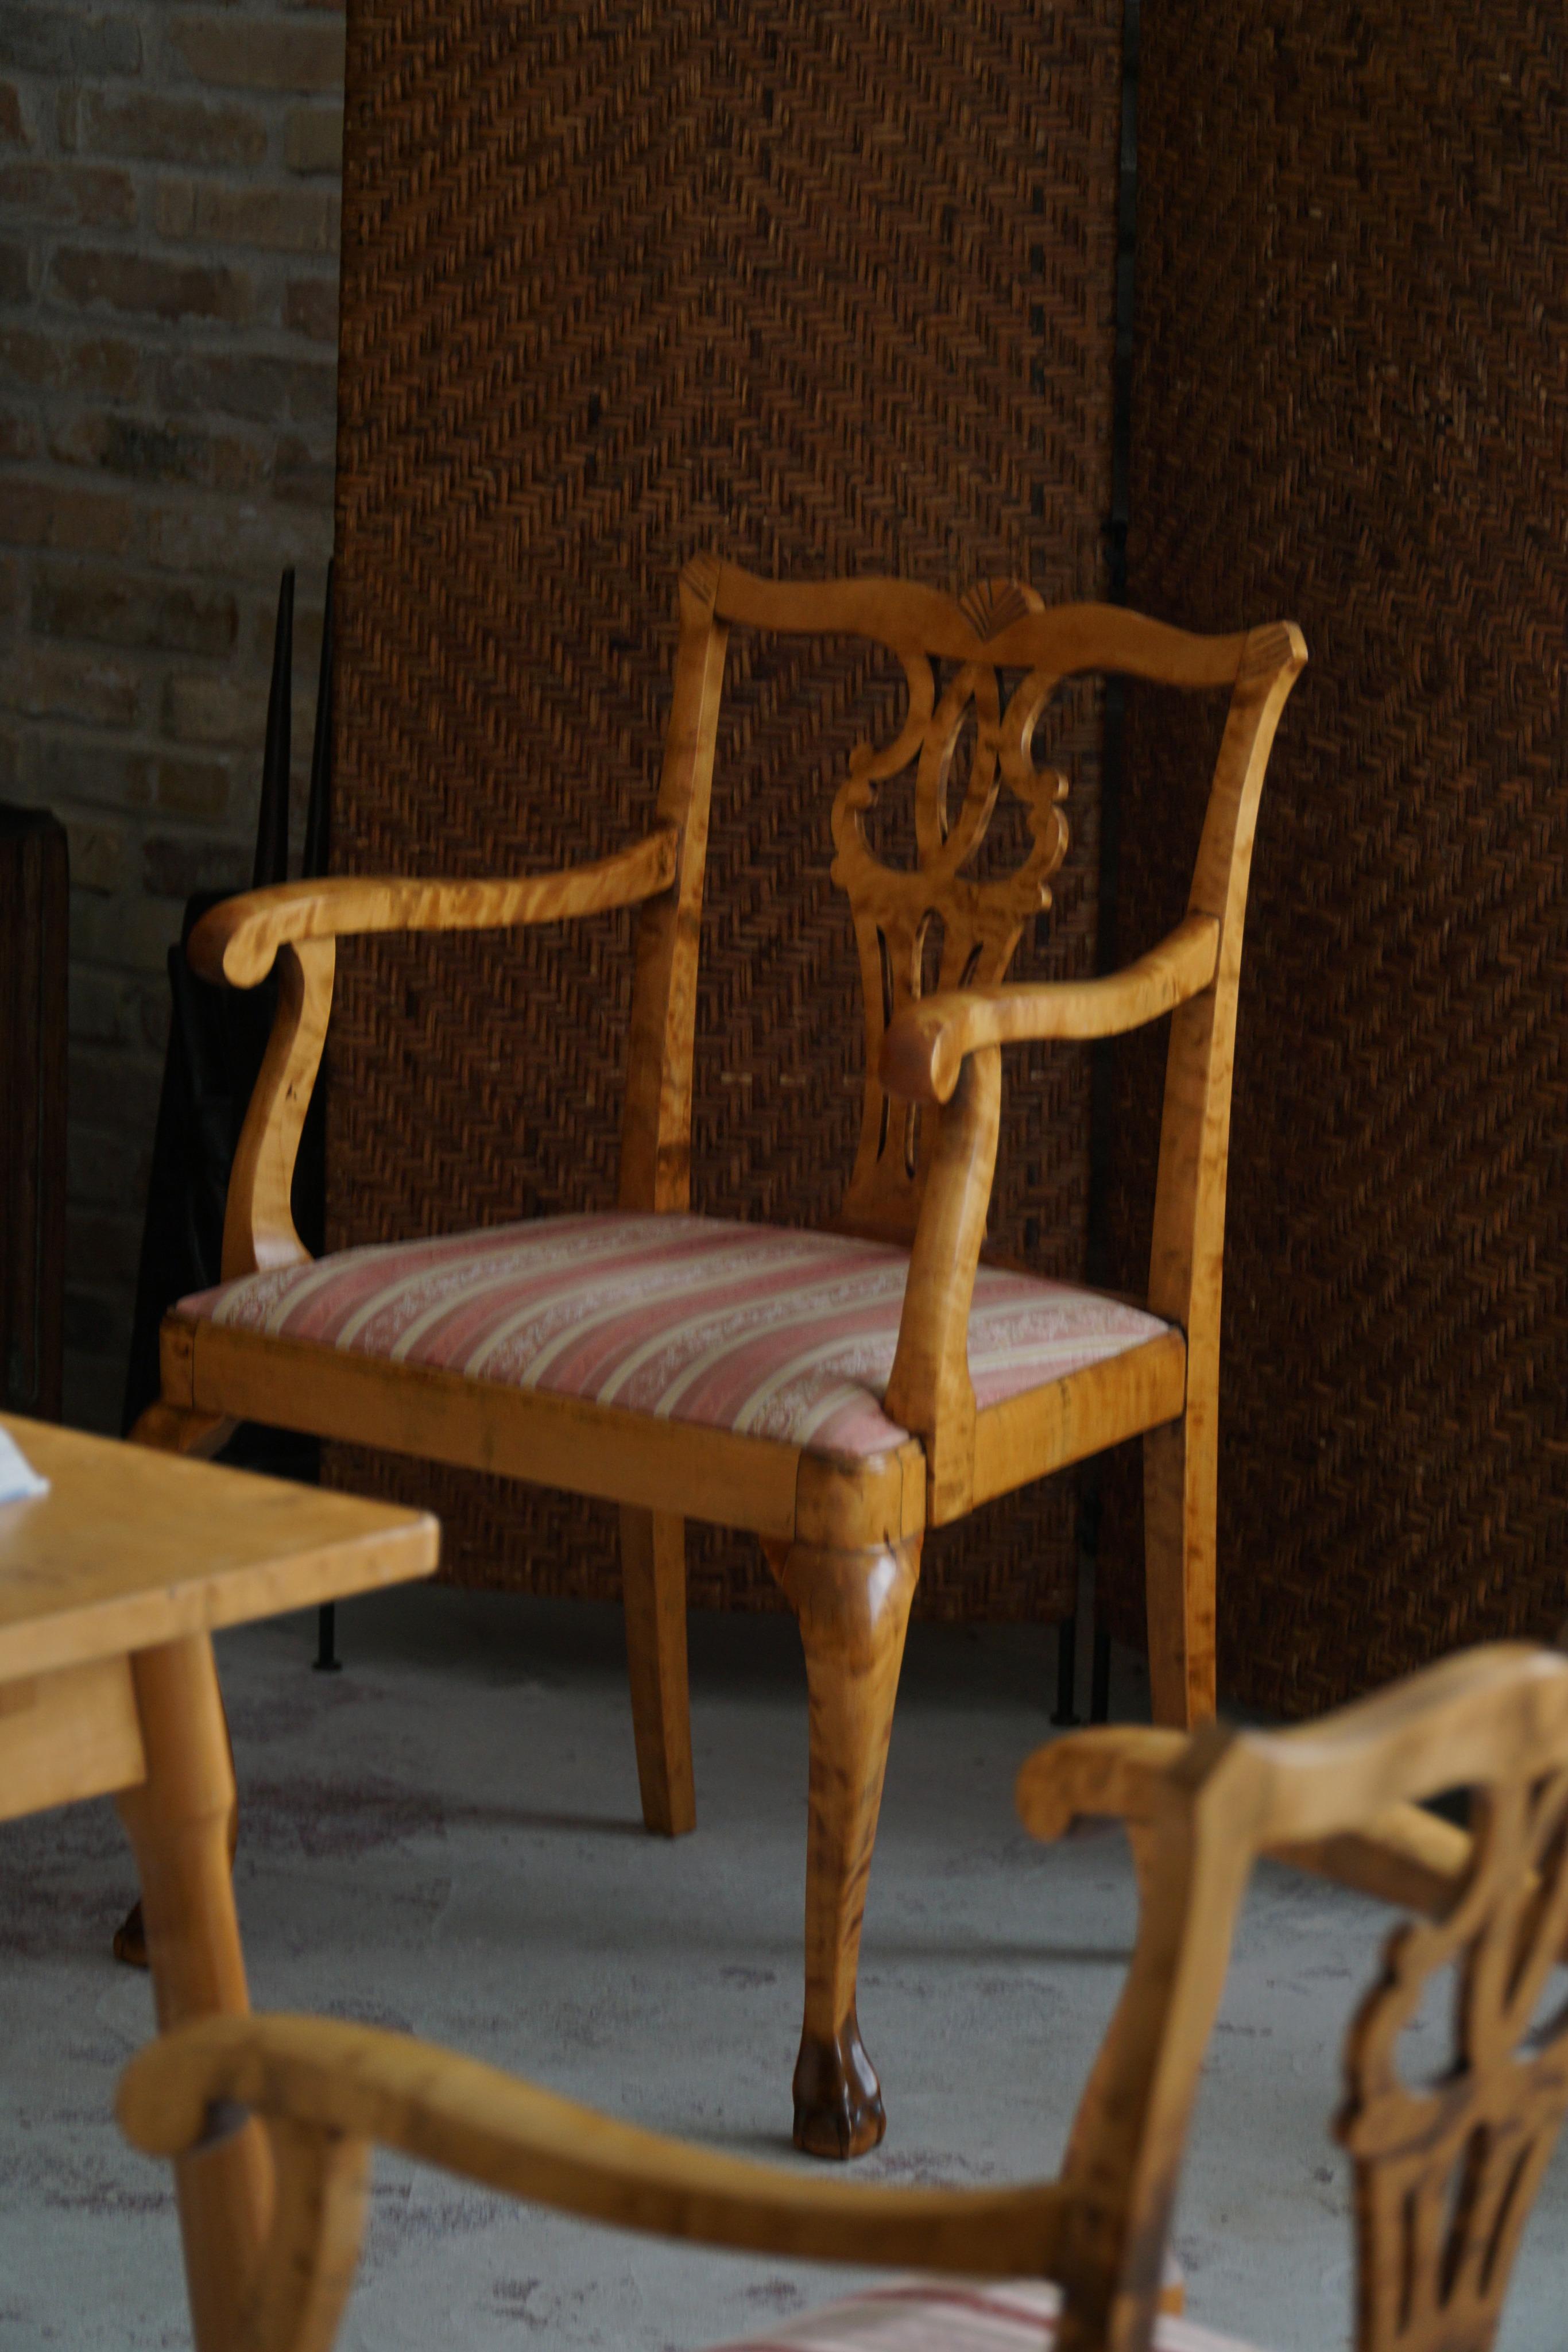 Ein dekadentes Paar englischer Sessel aus Birke mit einem schönen Stoff mit Streifenmuster. Hergestellt im frühen 20. Jahrhundert in England. Das Design der Stühle ist eine Hommage an den legendären englischen Möbelschreiner Thomas Chippendale, der